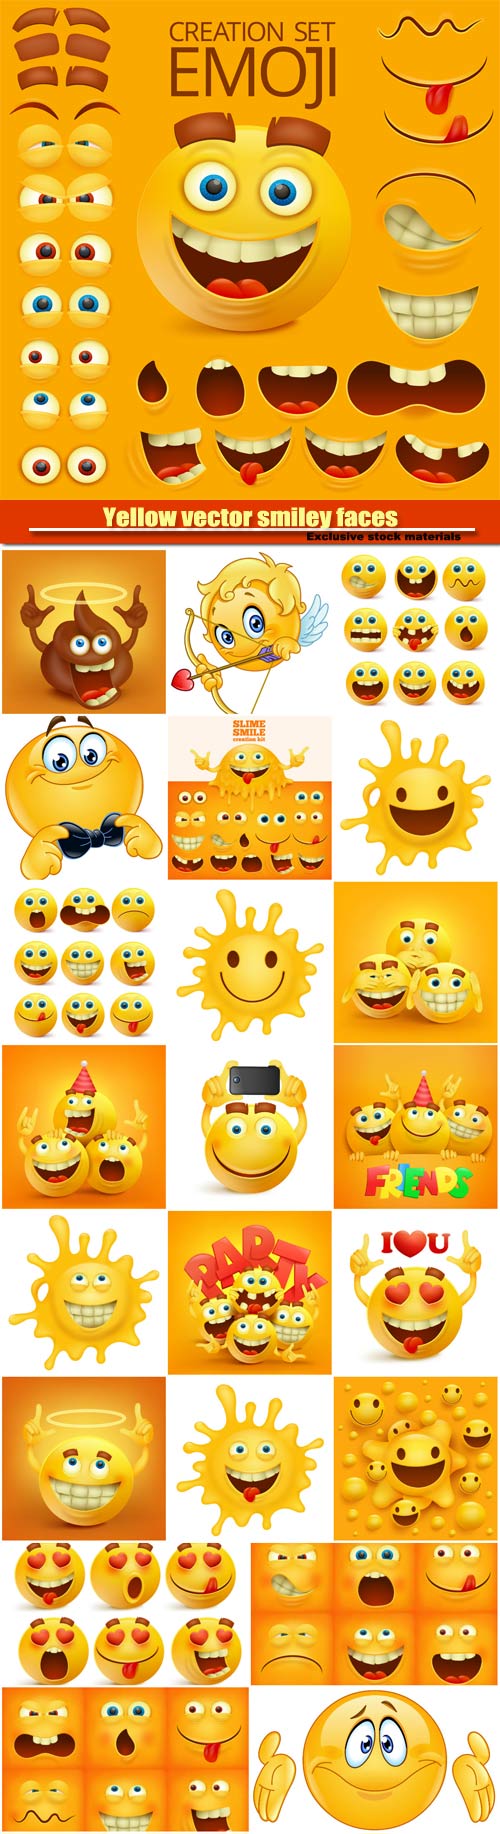 Yellow vector smiley faces